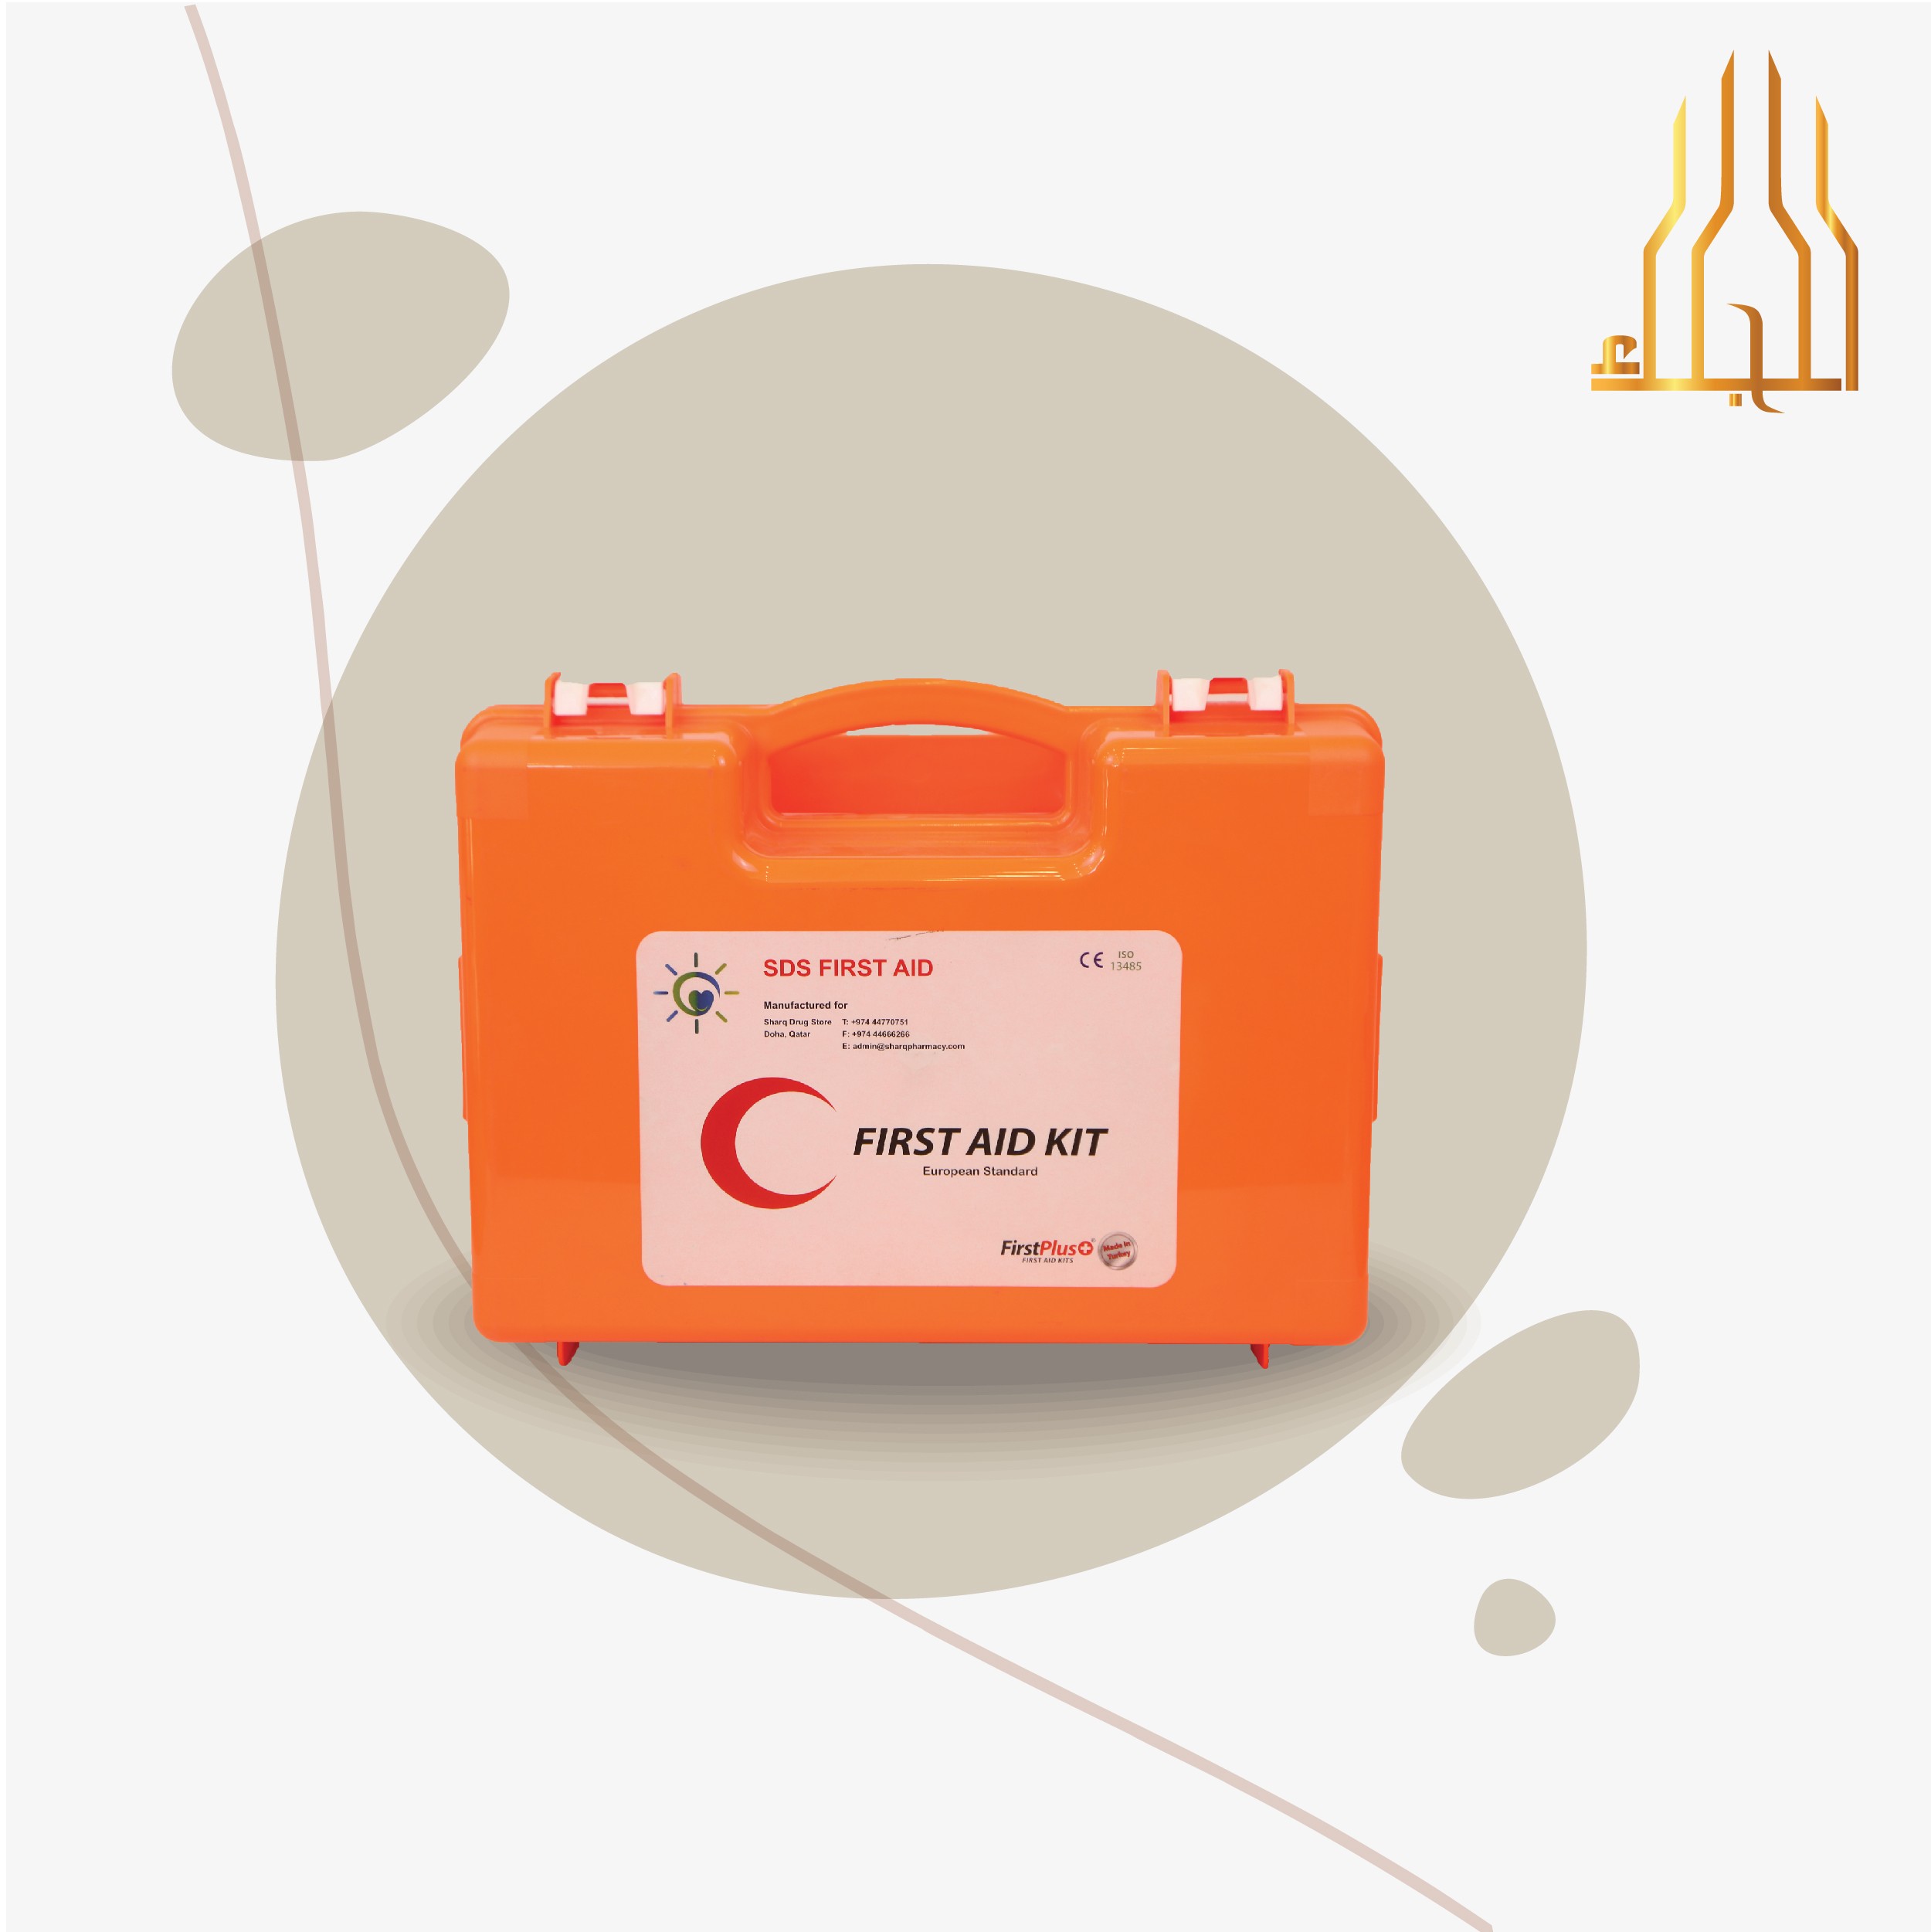 الصحة ادوات اسعافات اولية 16038441 mzad qatar